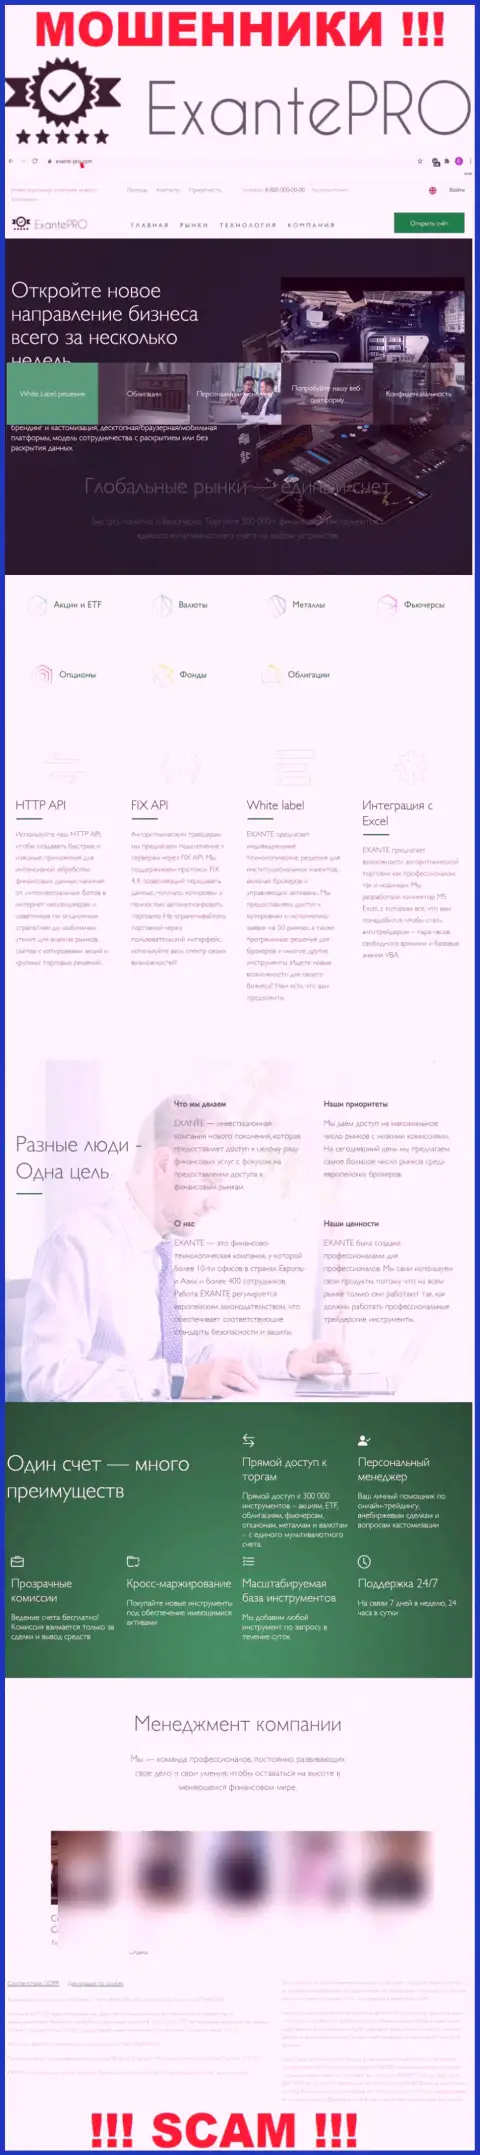 Разбор официального web-портала мошенников ЕКЗАНТЕПро